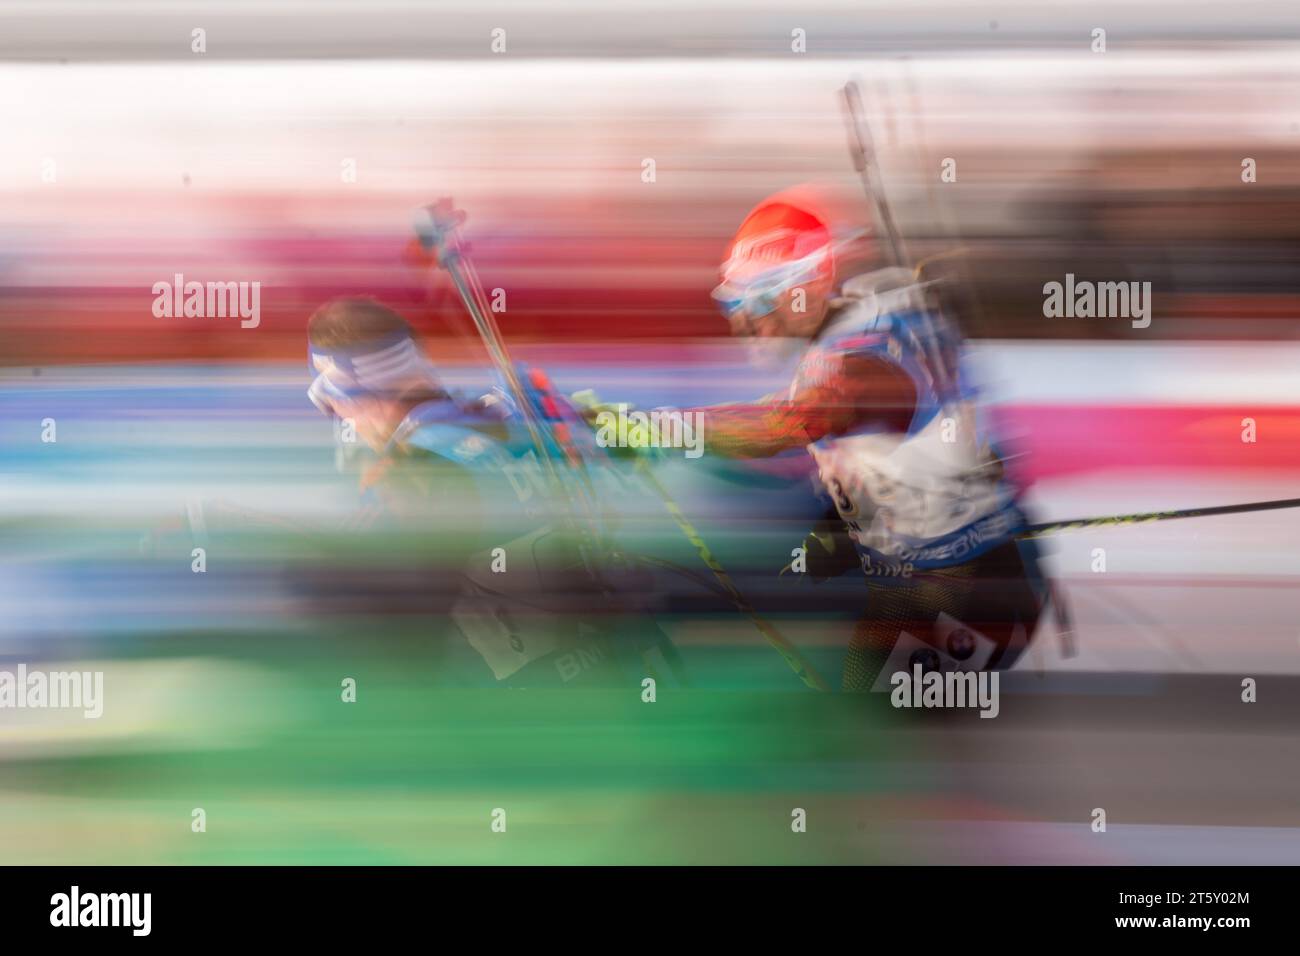 Arnd PEIFFER und Simon Schempp Staffelwechsel IBU Biathlon Weltmeisterschaft 4 X 7,5 KM Staffel der Herren in Hochfilzen, Oesterreich am 18.02.2017 Stock Photo